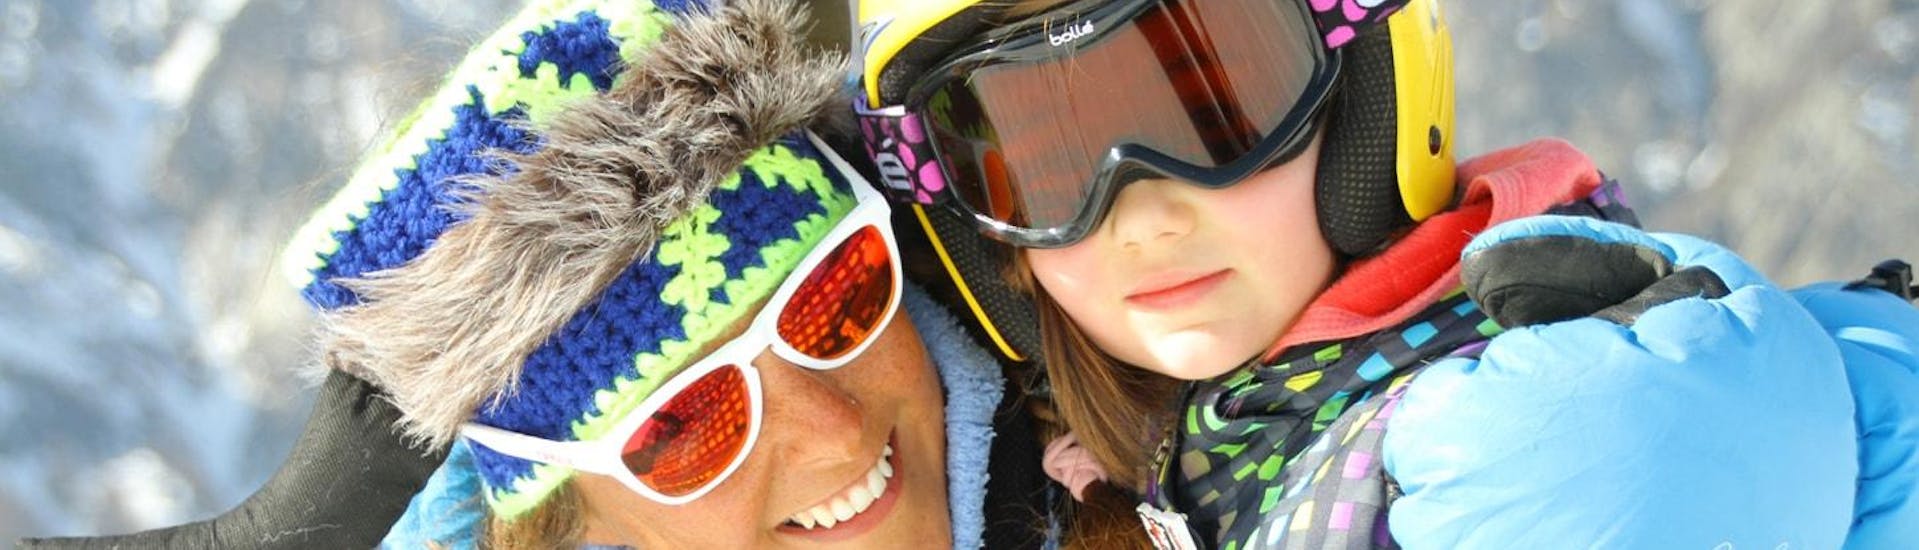 Moments de bonheur d'une petite skieuse avec son moniteur de ski de l'école de ski Scuola di Sci Bardonecchia pendant son Cours de ski pour Enfants (4-14 ans) - Haute saison.